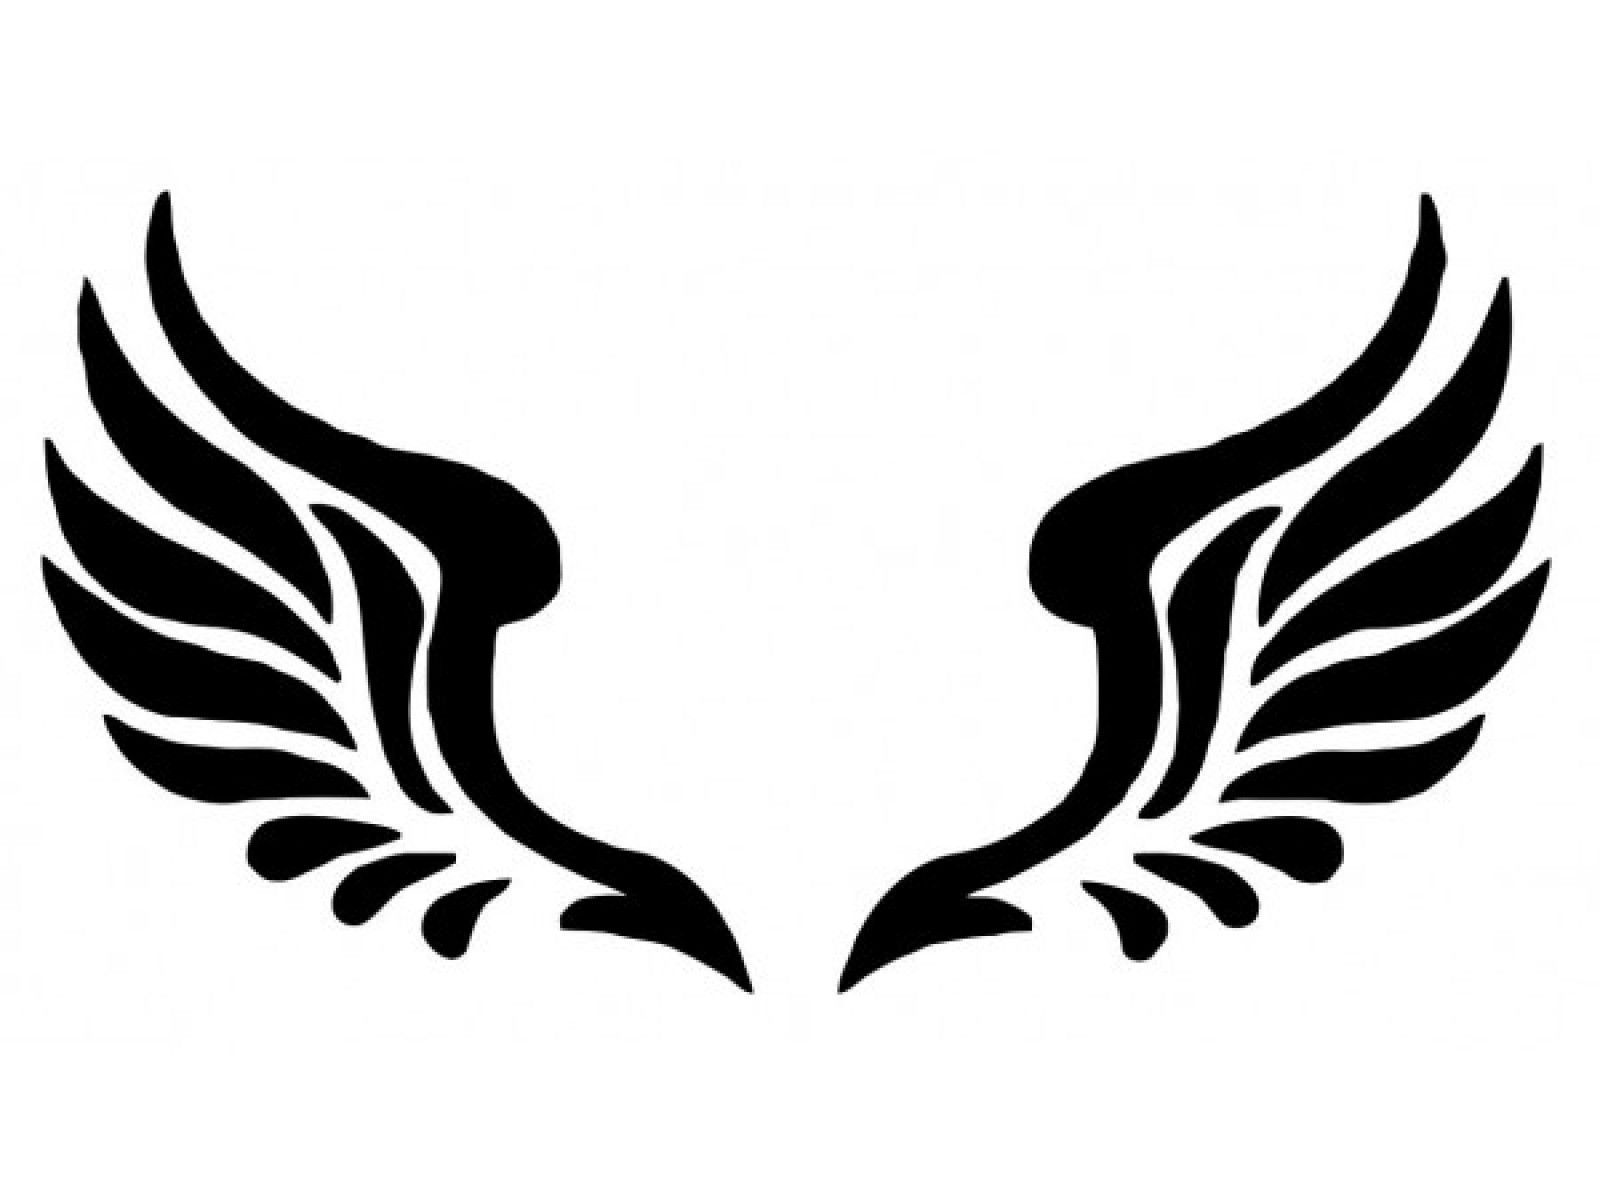 Angel wings silhouette.